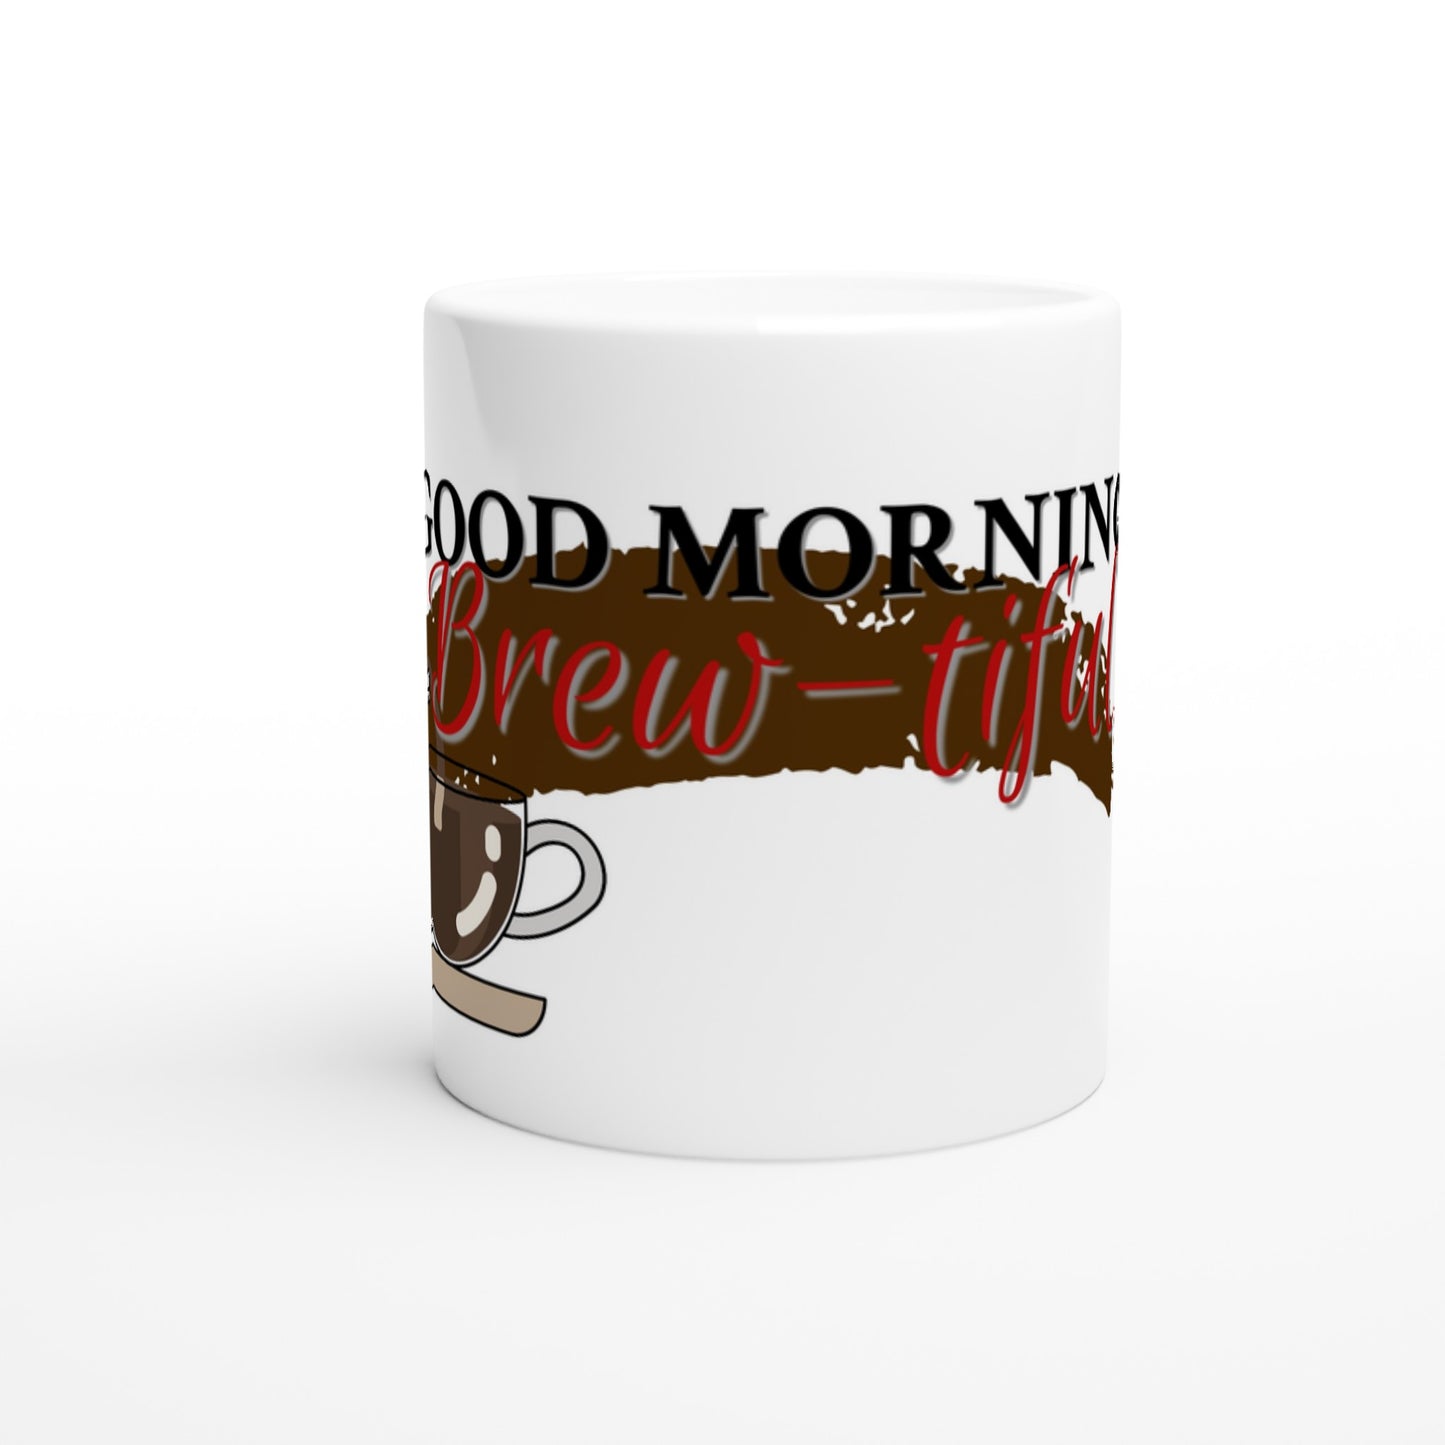 Good Morning Brew-tiful: Coffee Mug